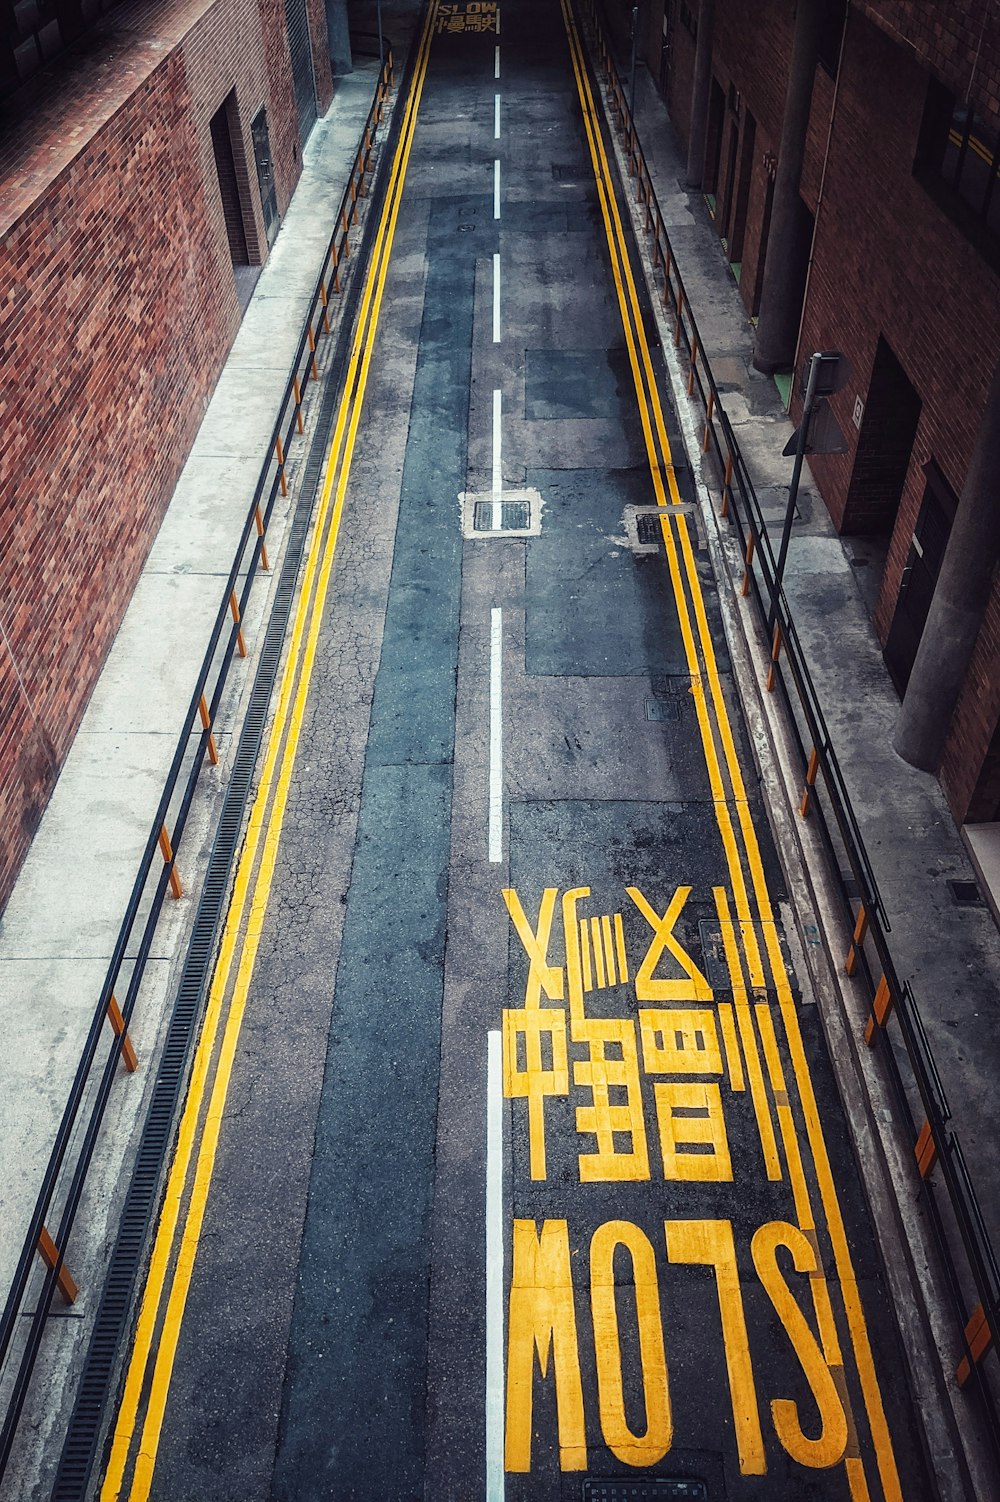 검은 색과 노란색 도로 표지판